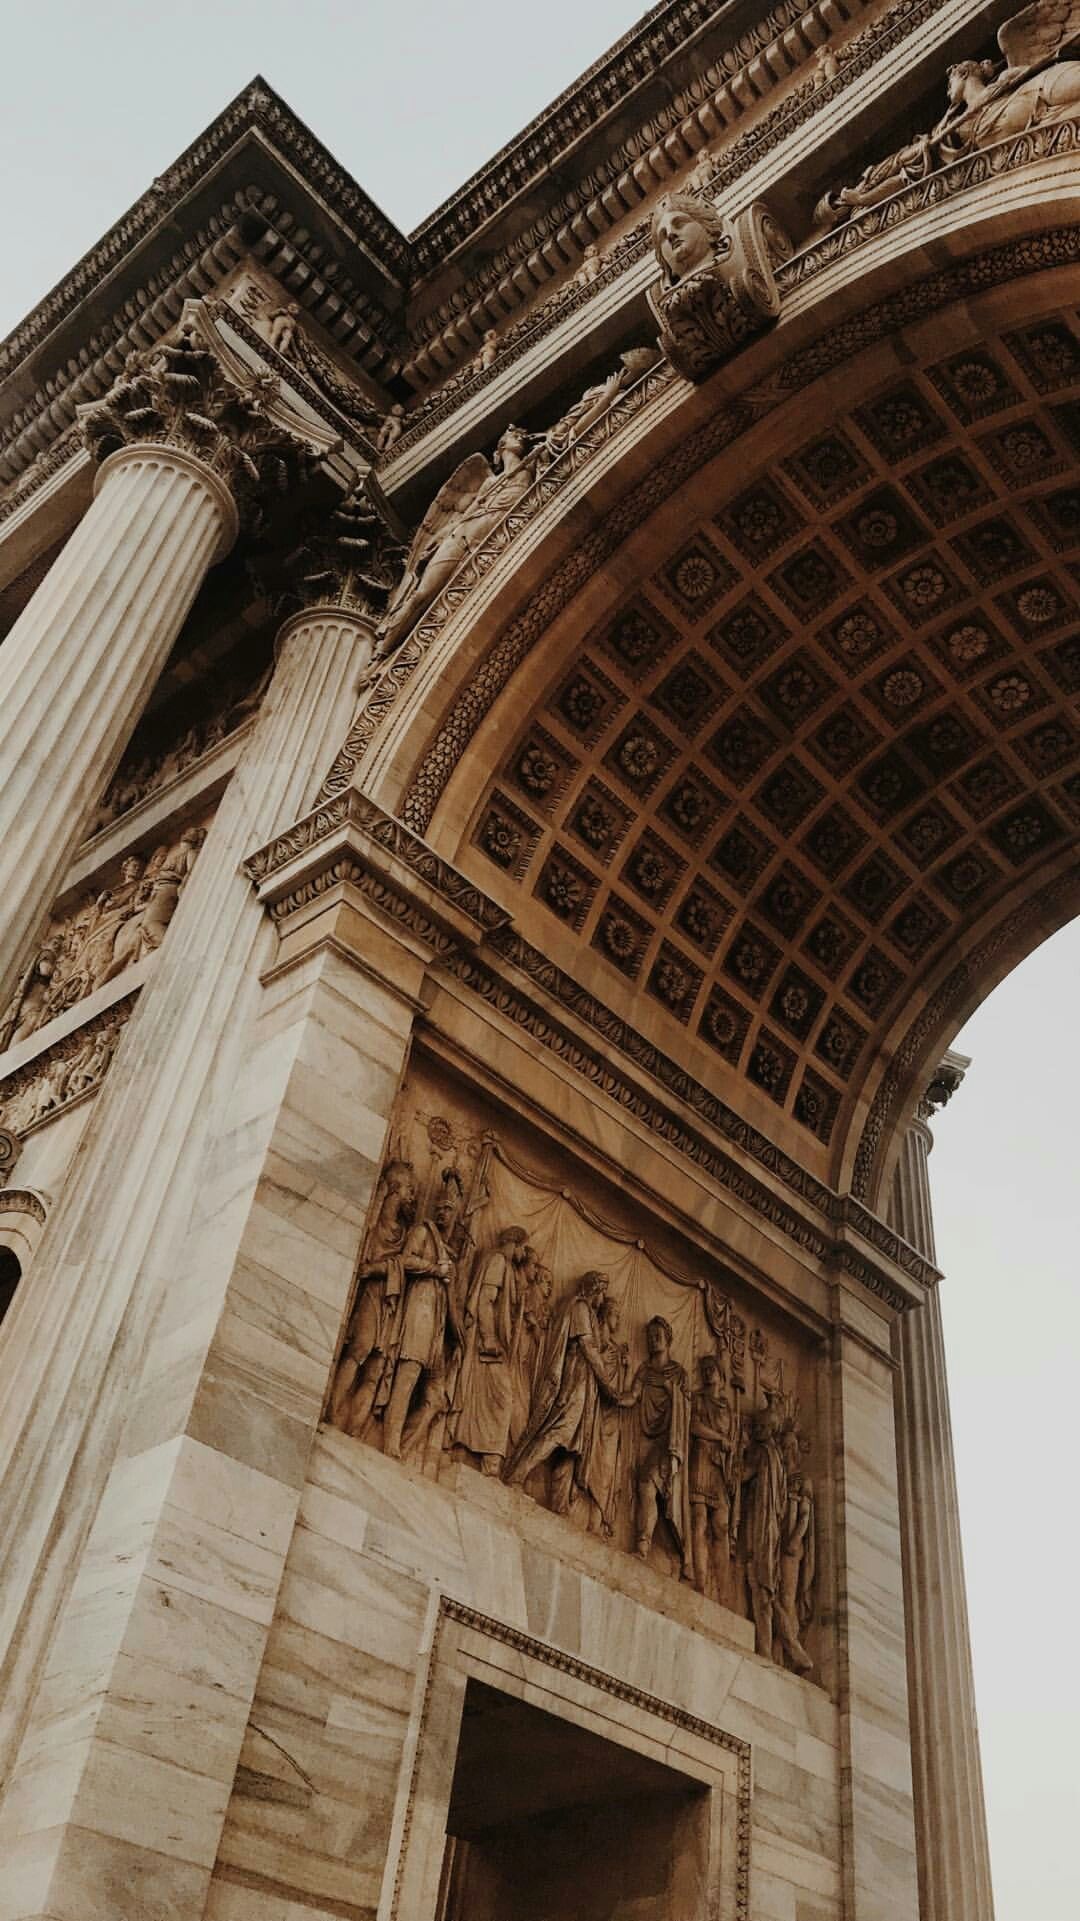 The Arc de Triomphe is a famous arch in Paris, France. - Architecture